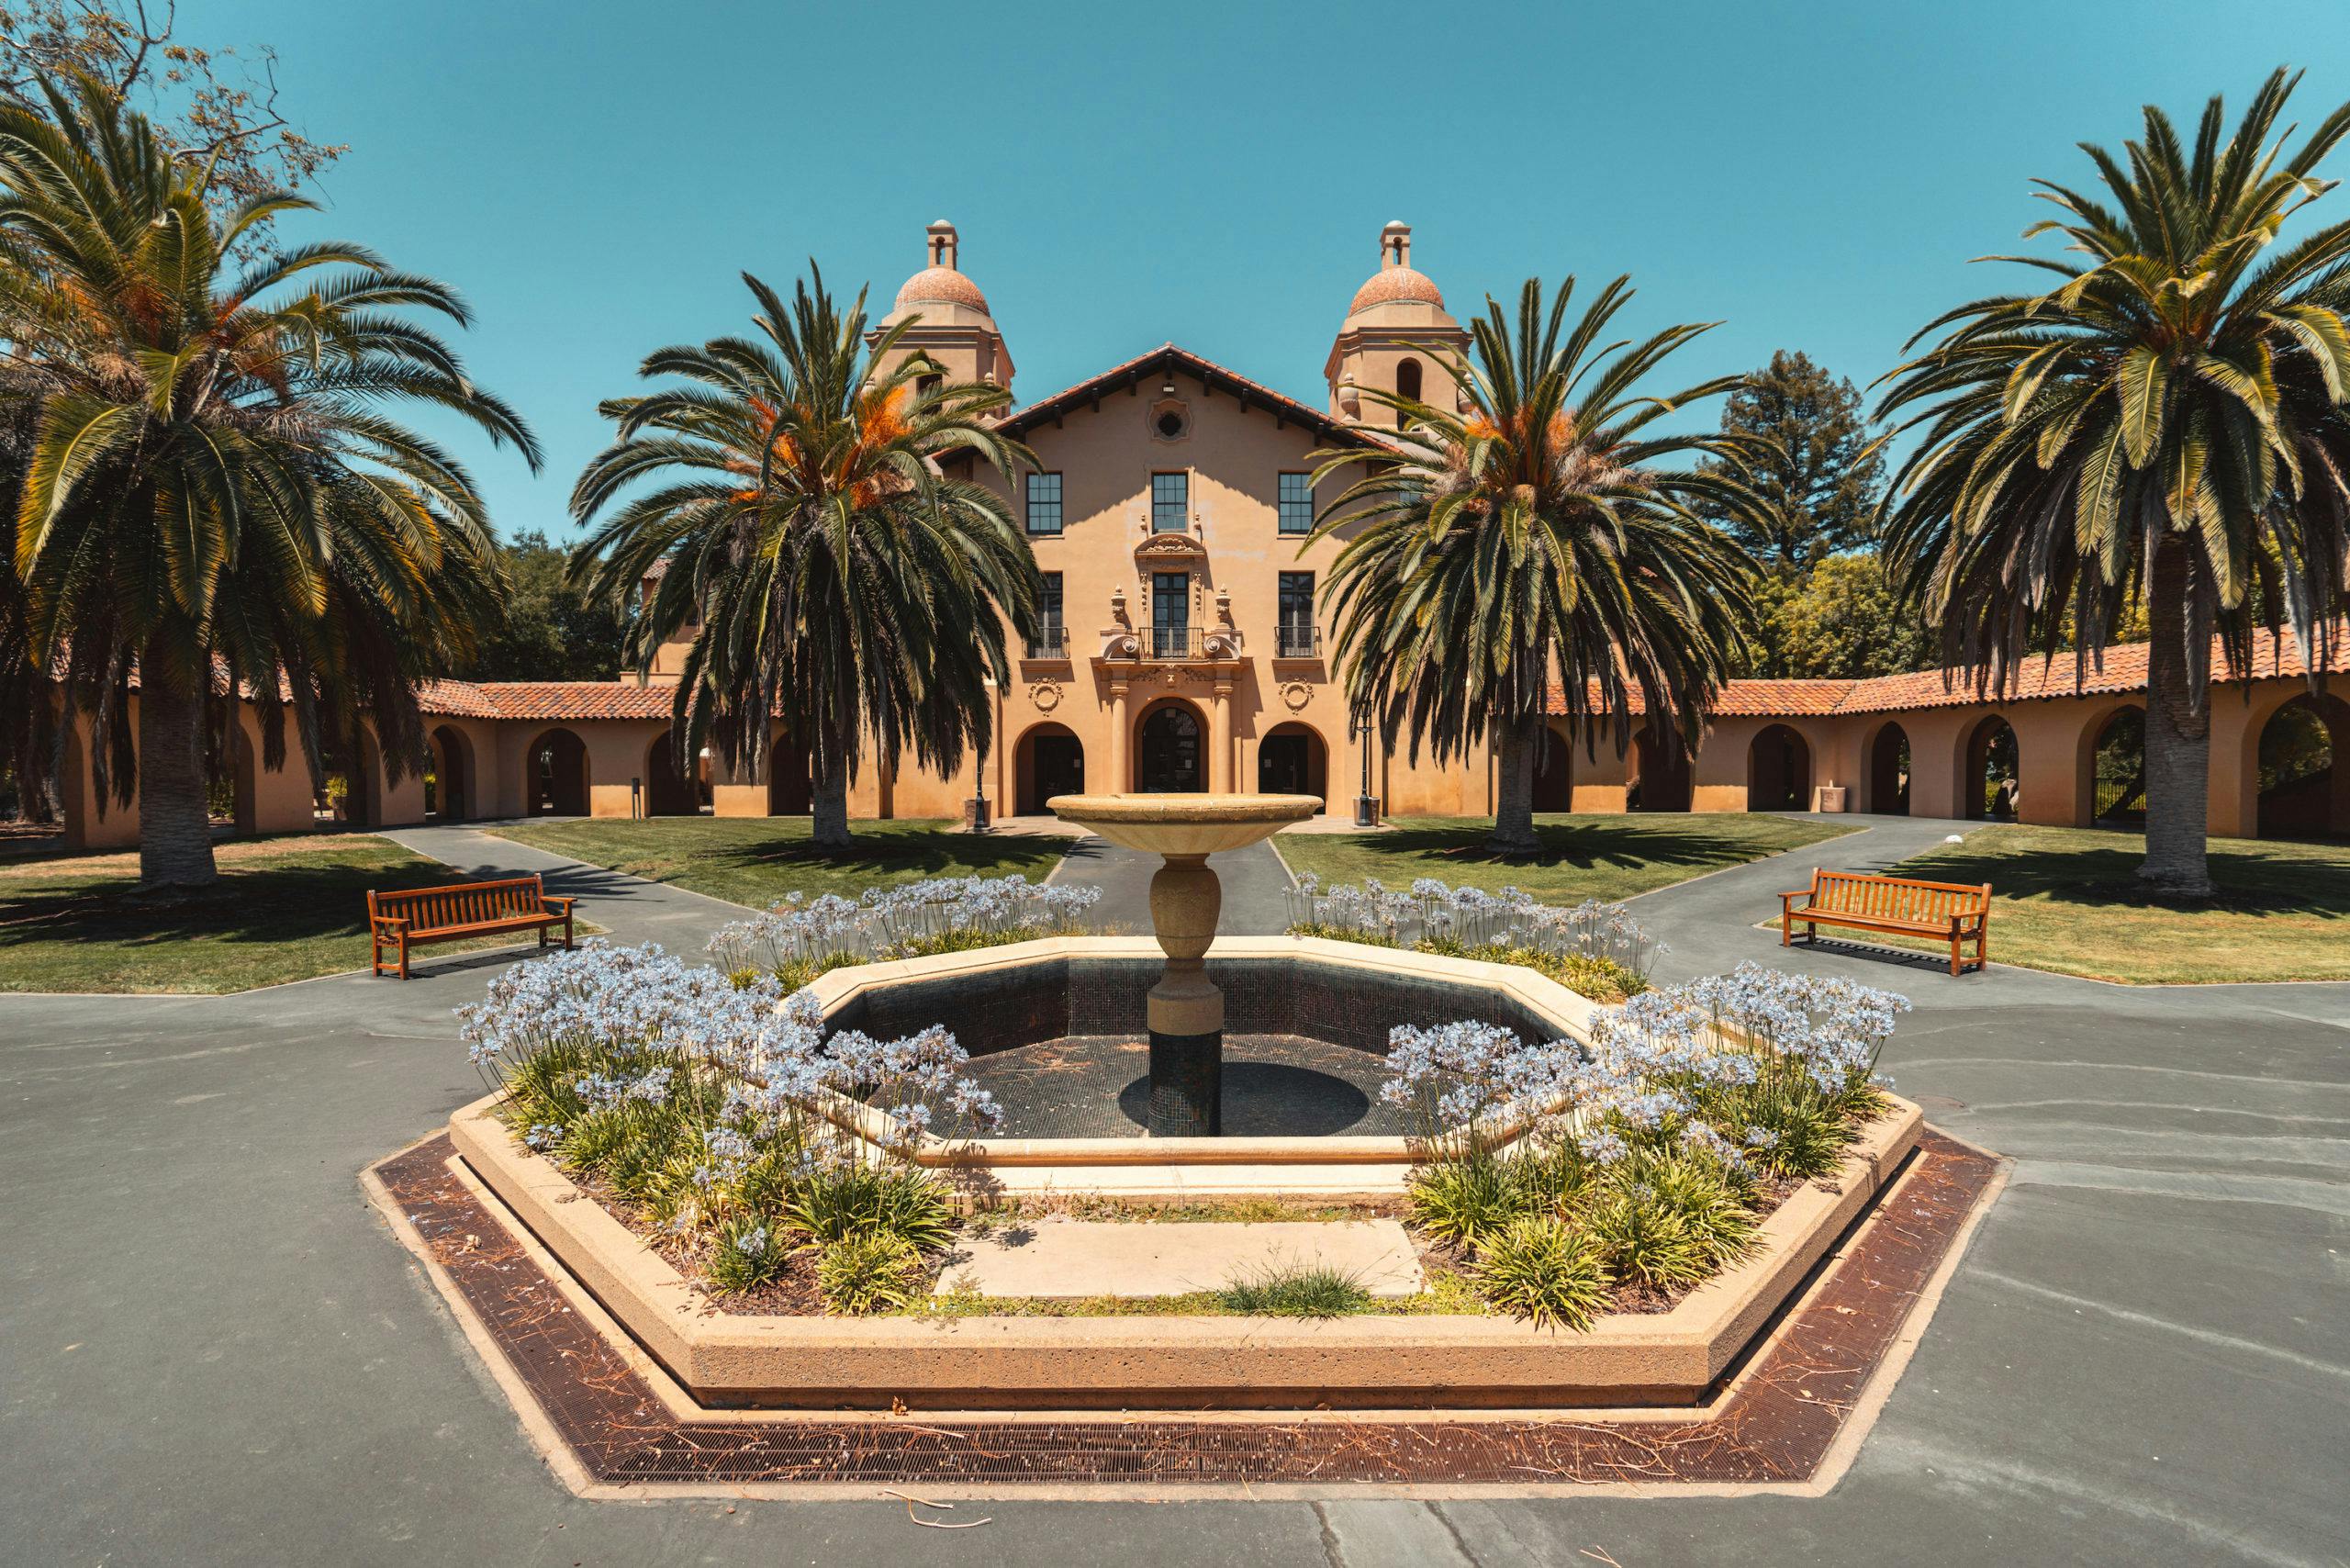 Stanford Online High School